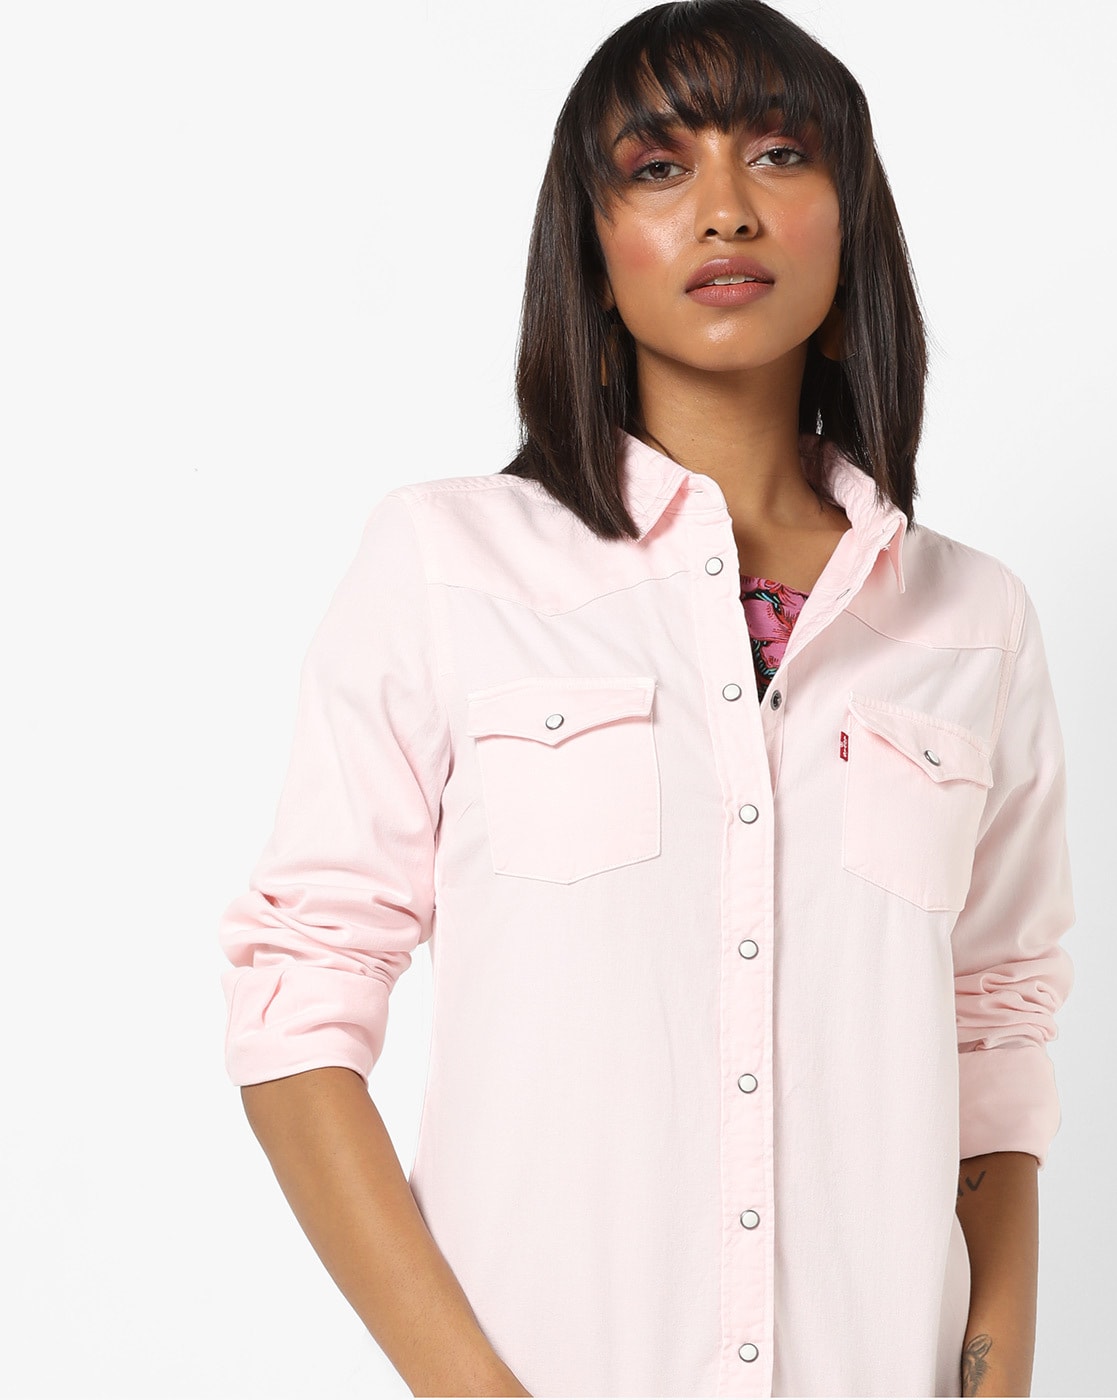 LEVI'S - Women's essential western denim shirt - GH-Stores.com